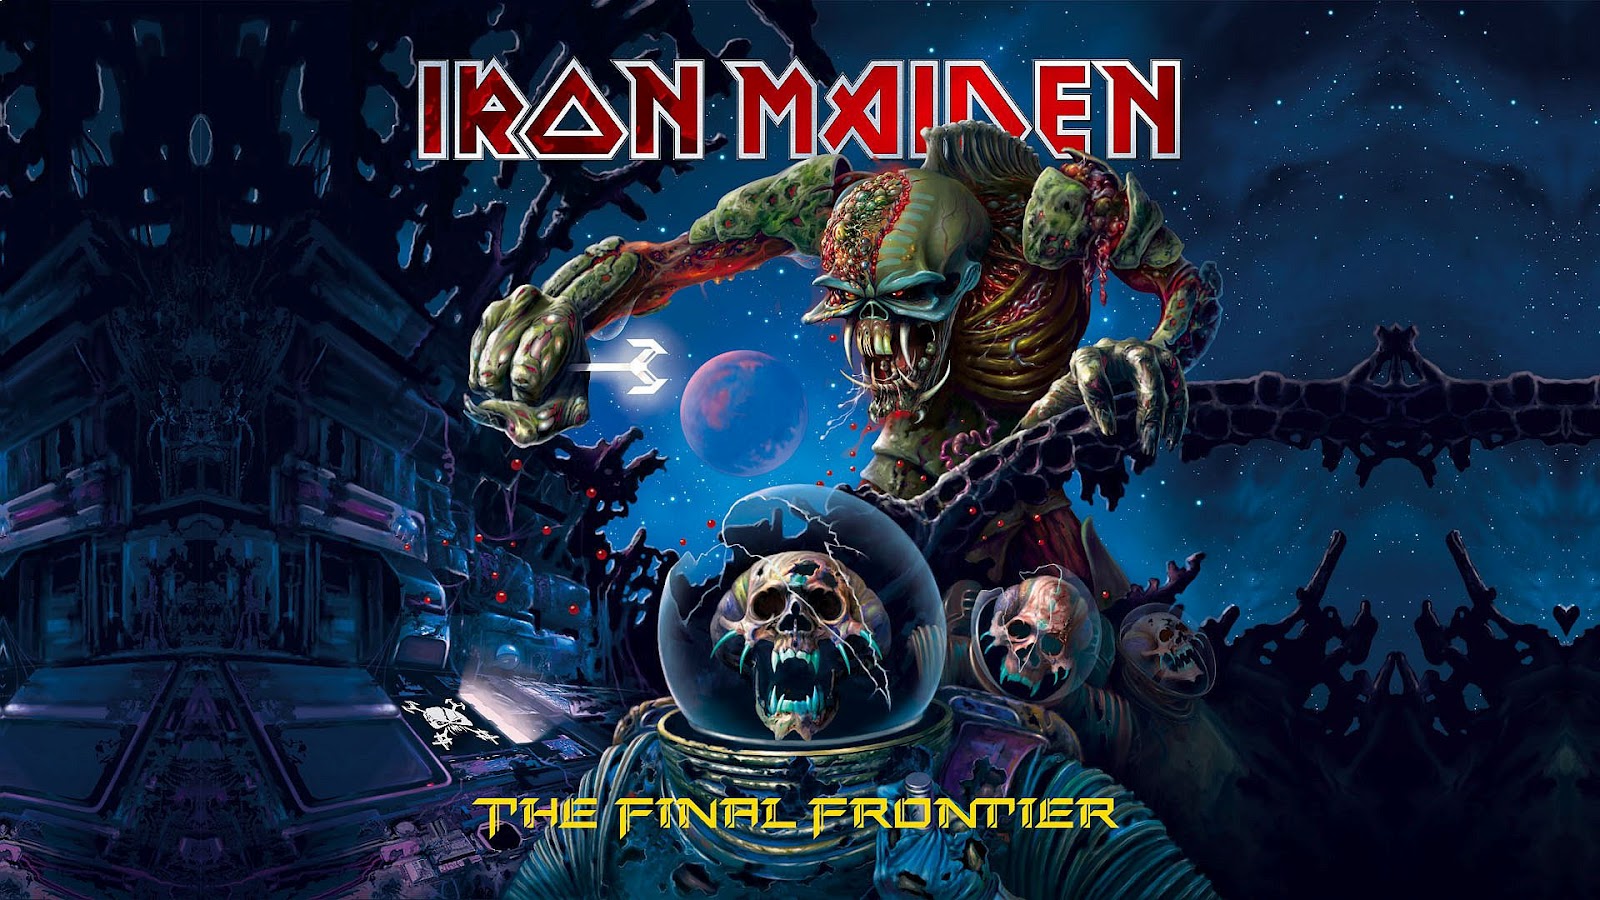 Iron+maiden+Wallpaper+the+final+frontier.jpg